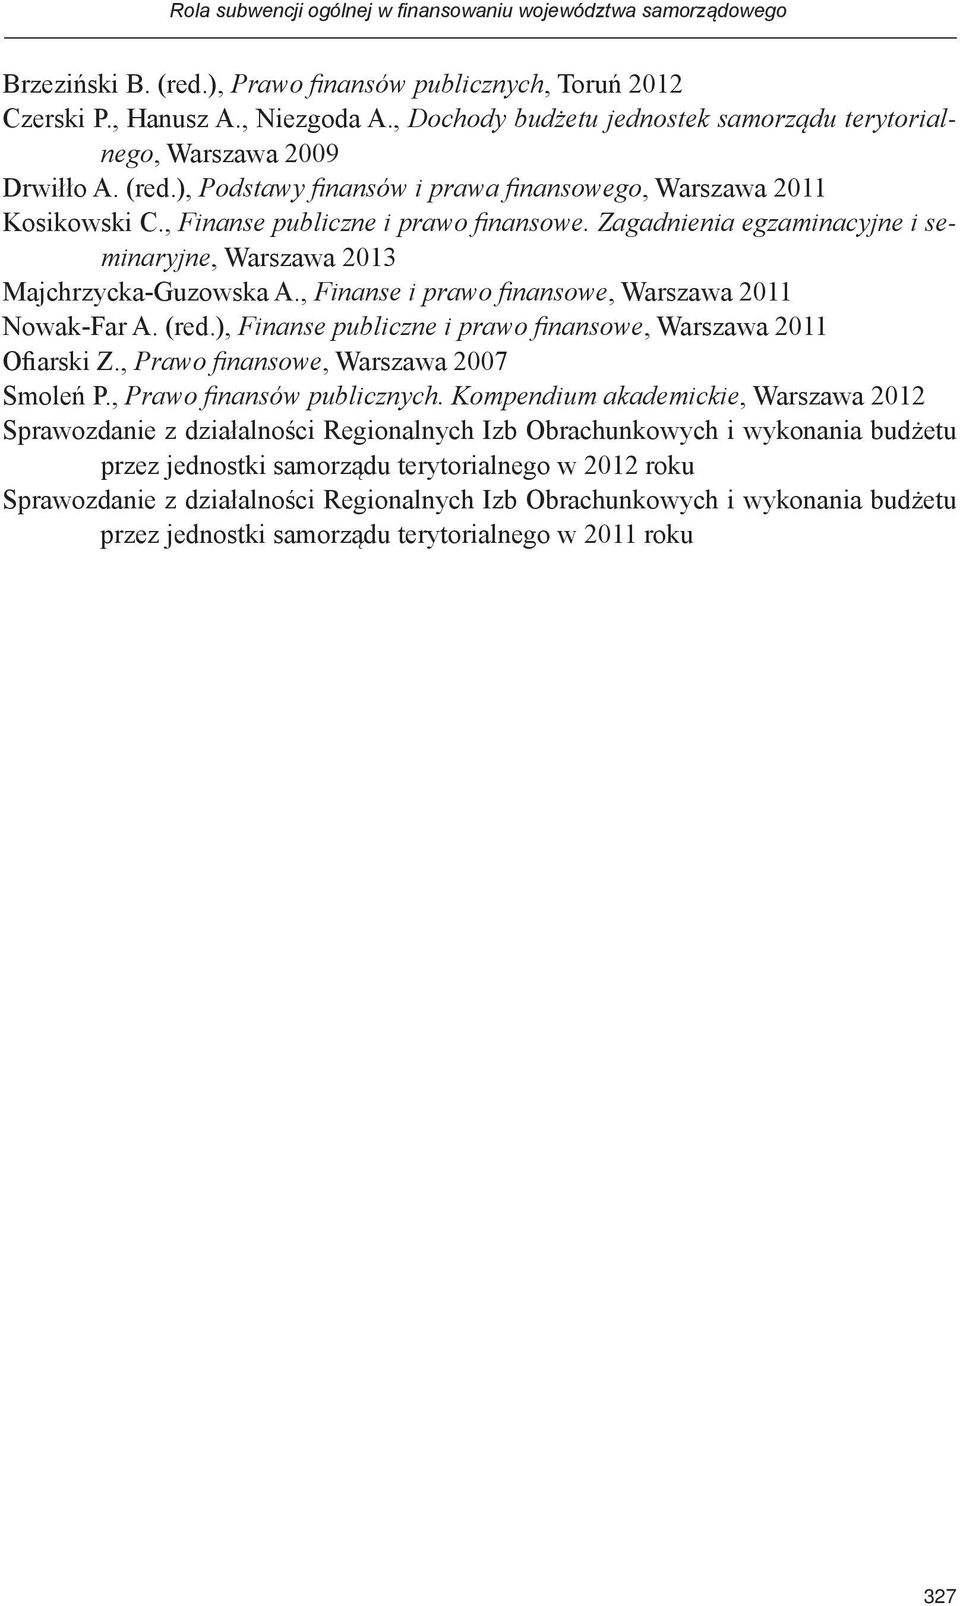 Zagadnienia egzaminacyjne i seminaryjne, Warszawa 2013 Majchrzycka-Guzowska A., Finanse i prawo finansowe, Warszawa 2011 Nowak-Far A. (red.